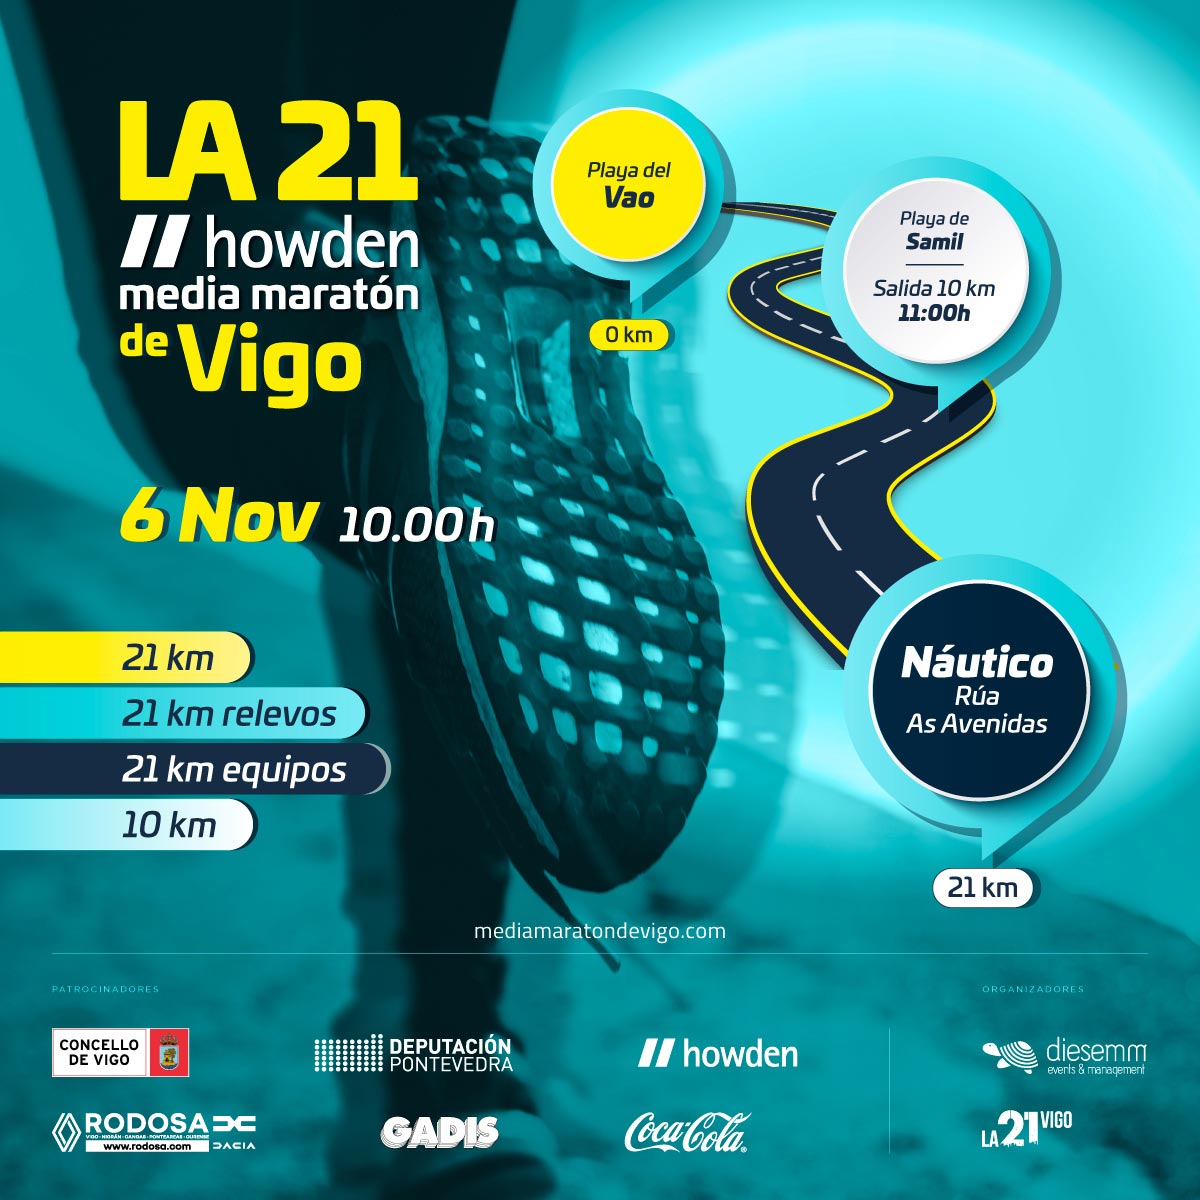 La 21 media maratón de Vigo